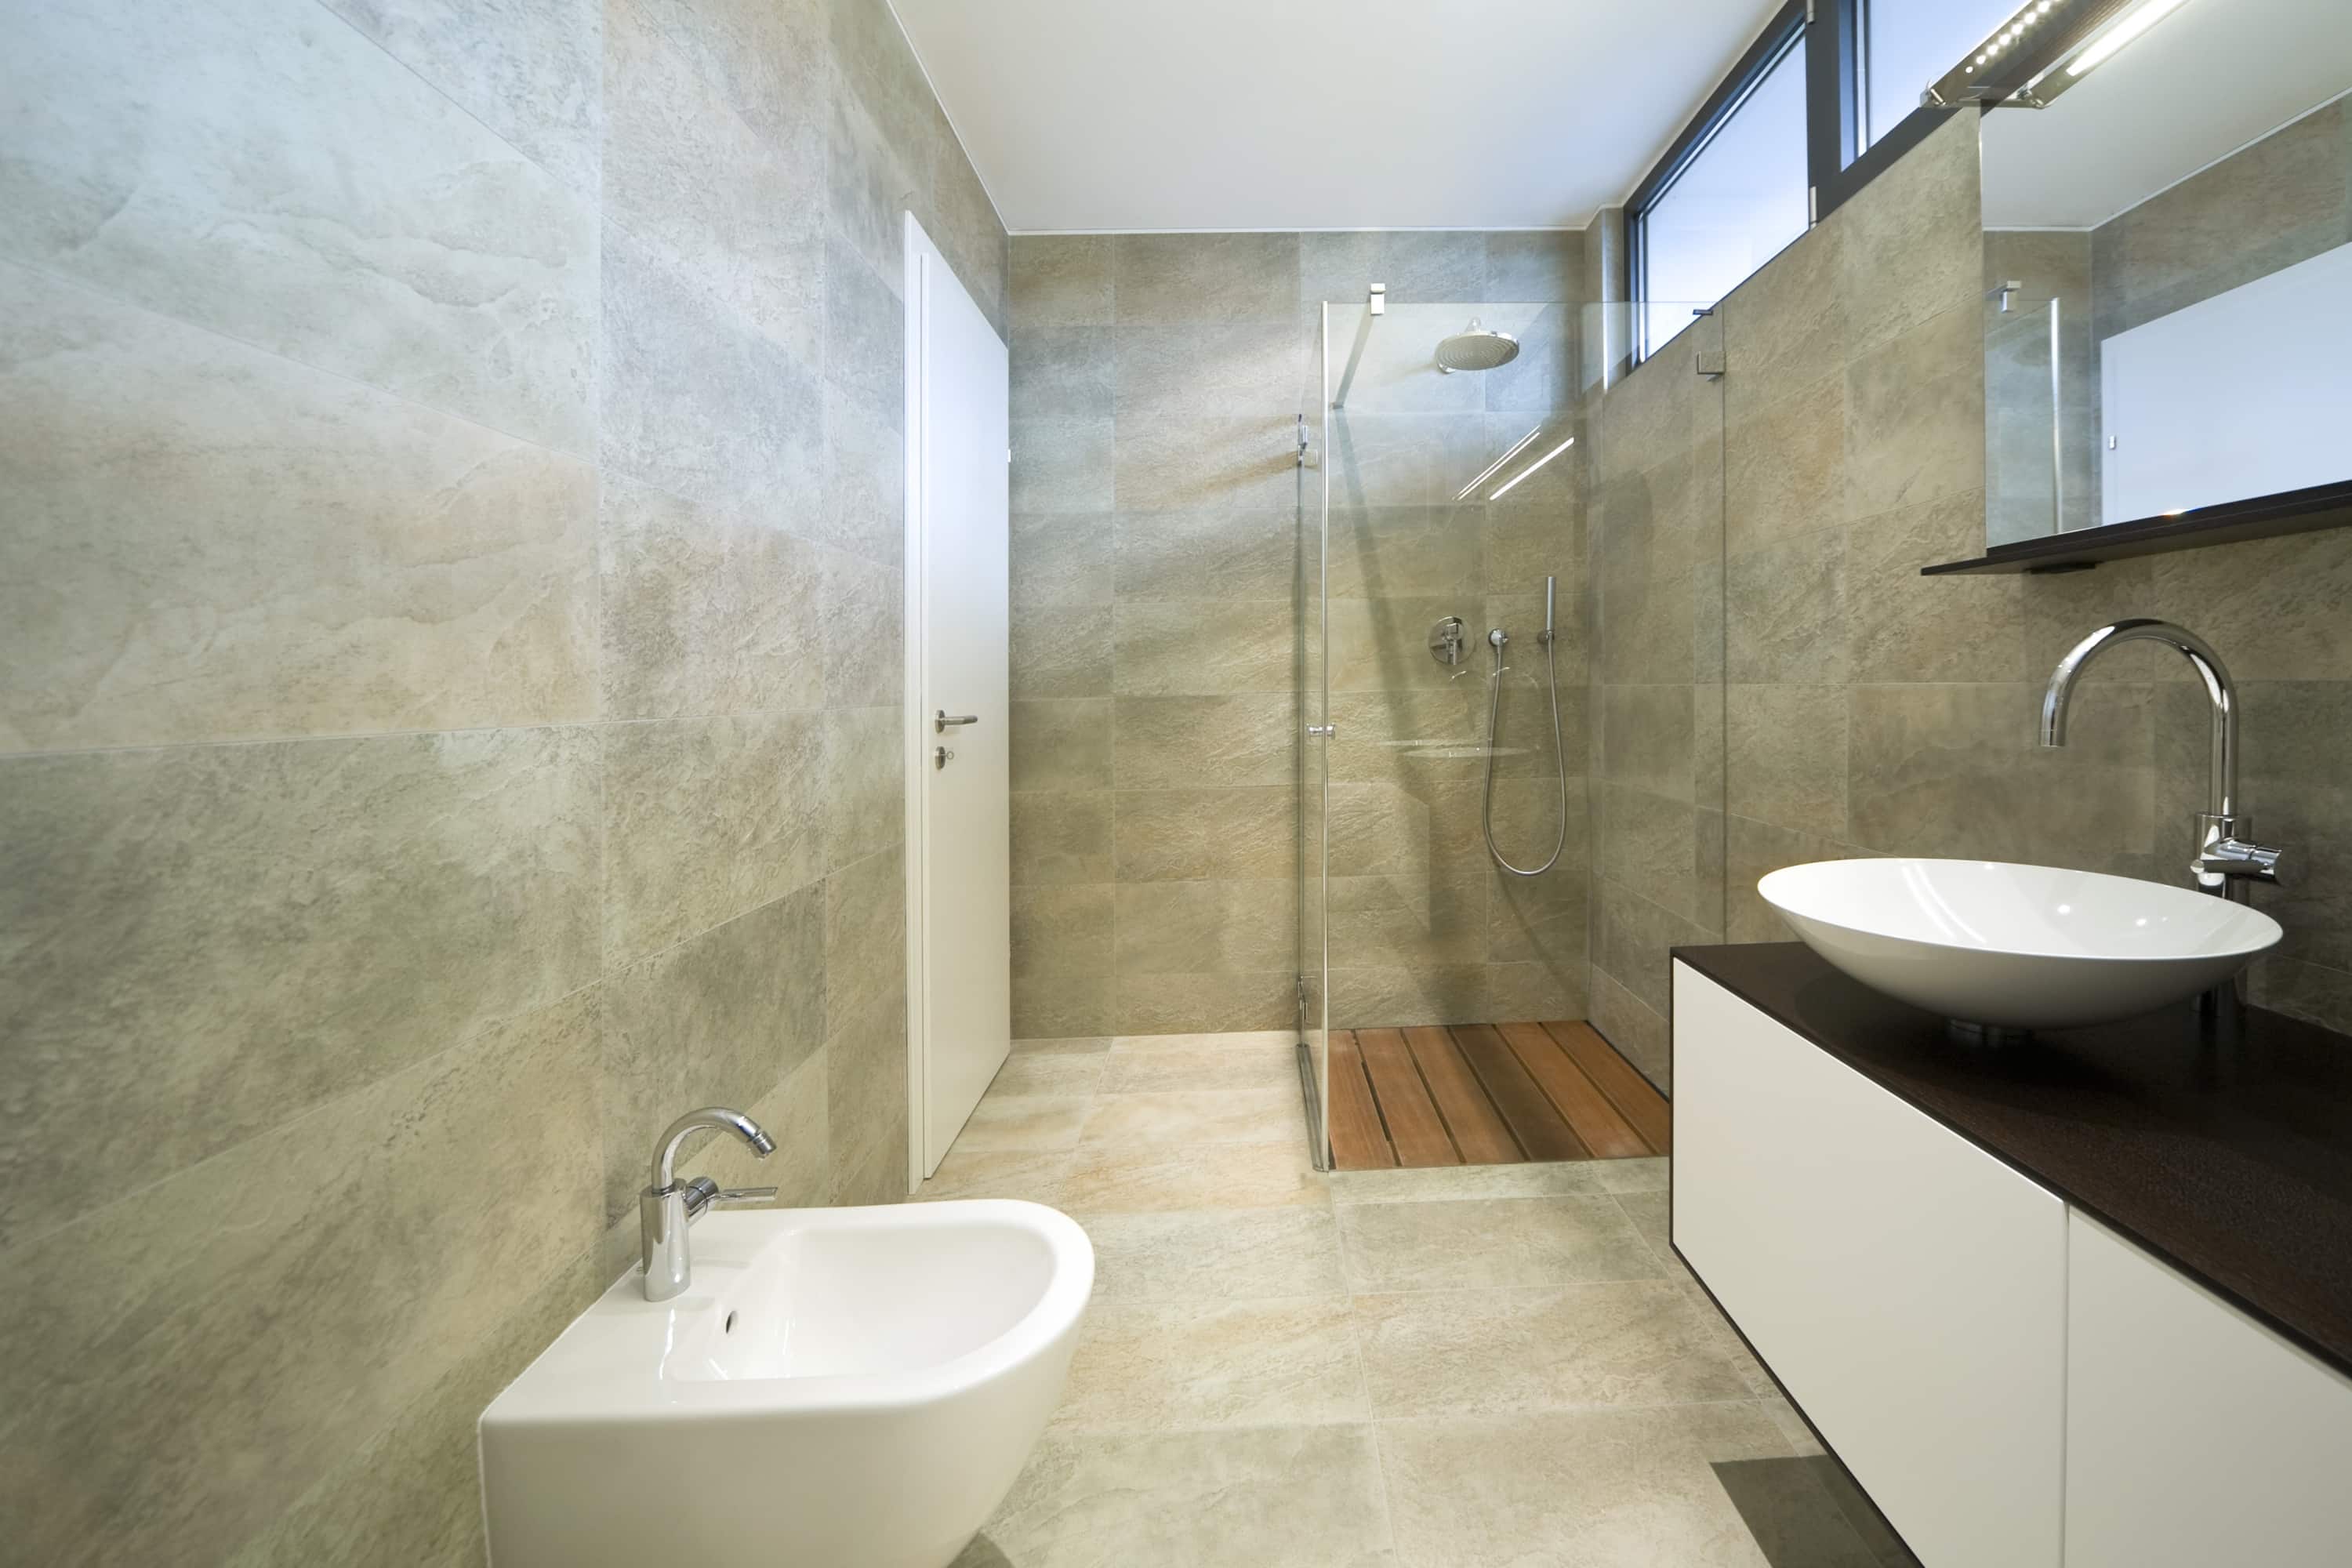 Goedkope badkamer renovatie: 5 tips [+ prijzen]